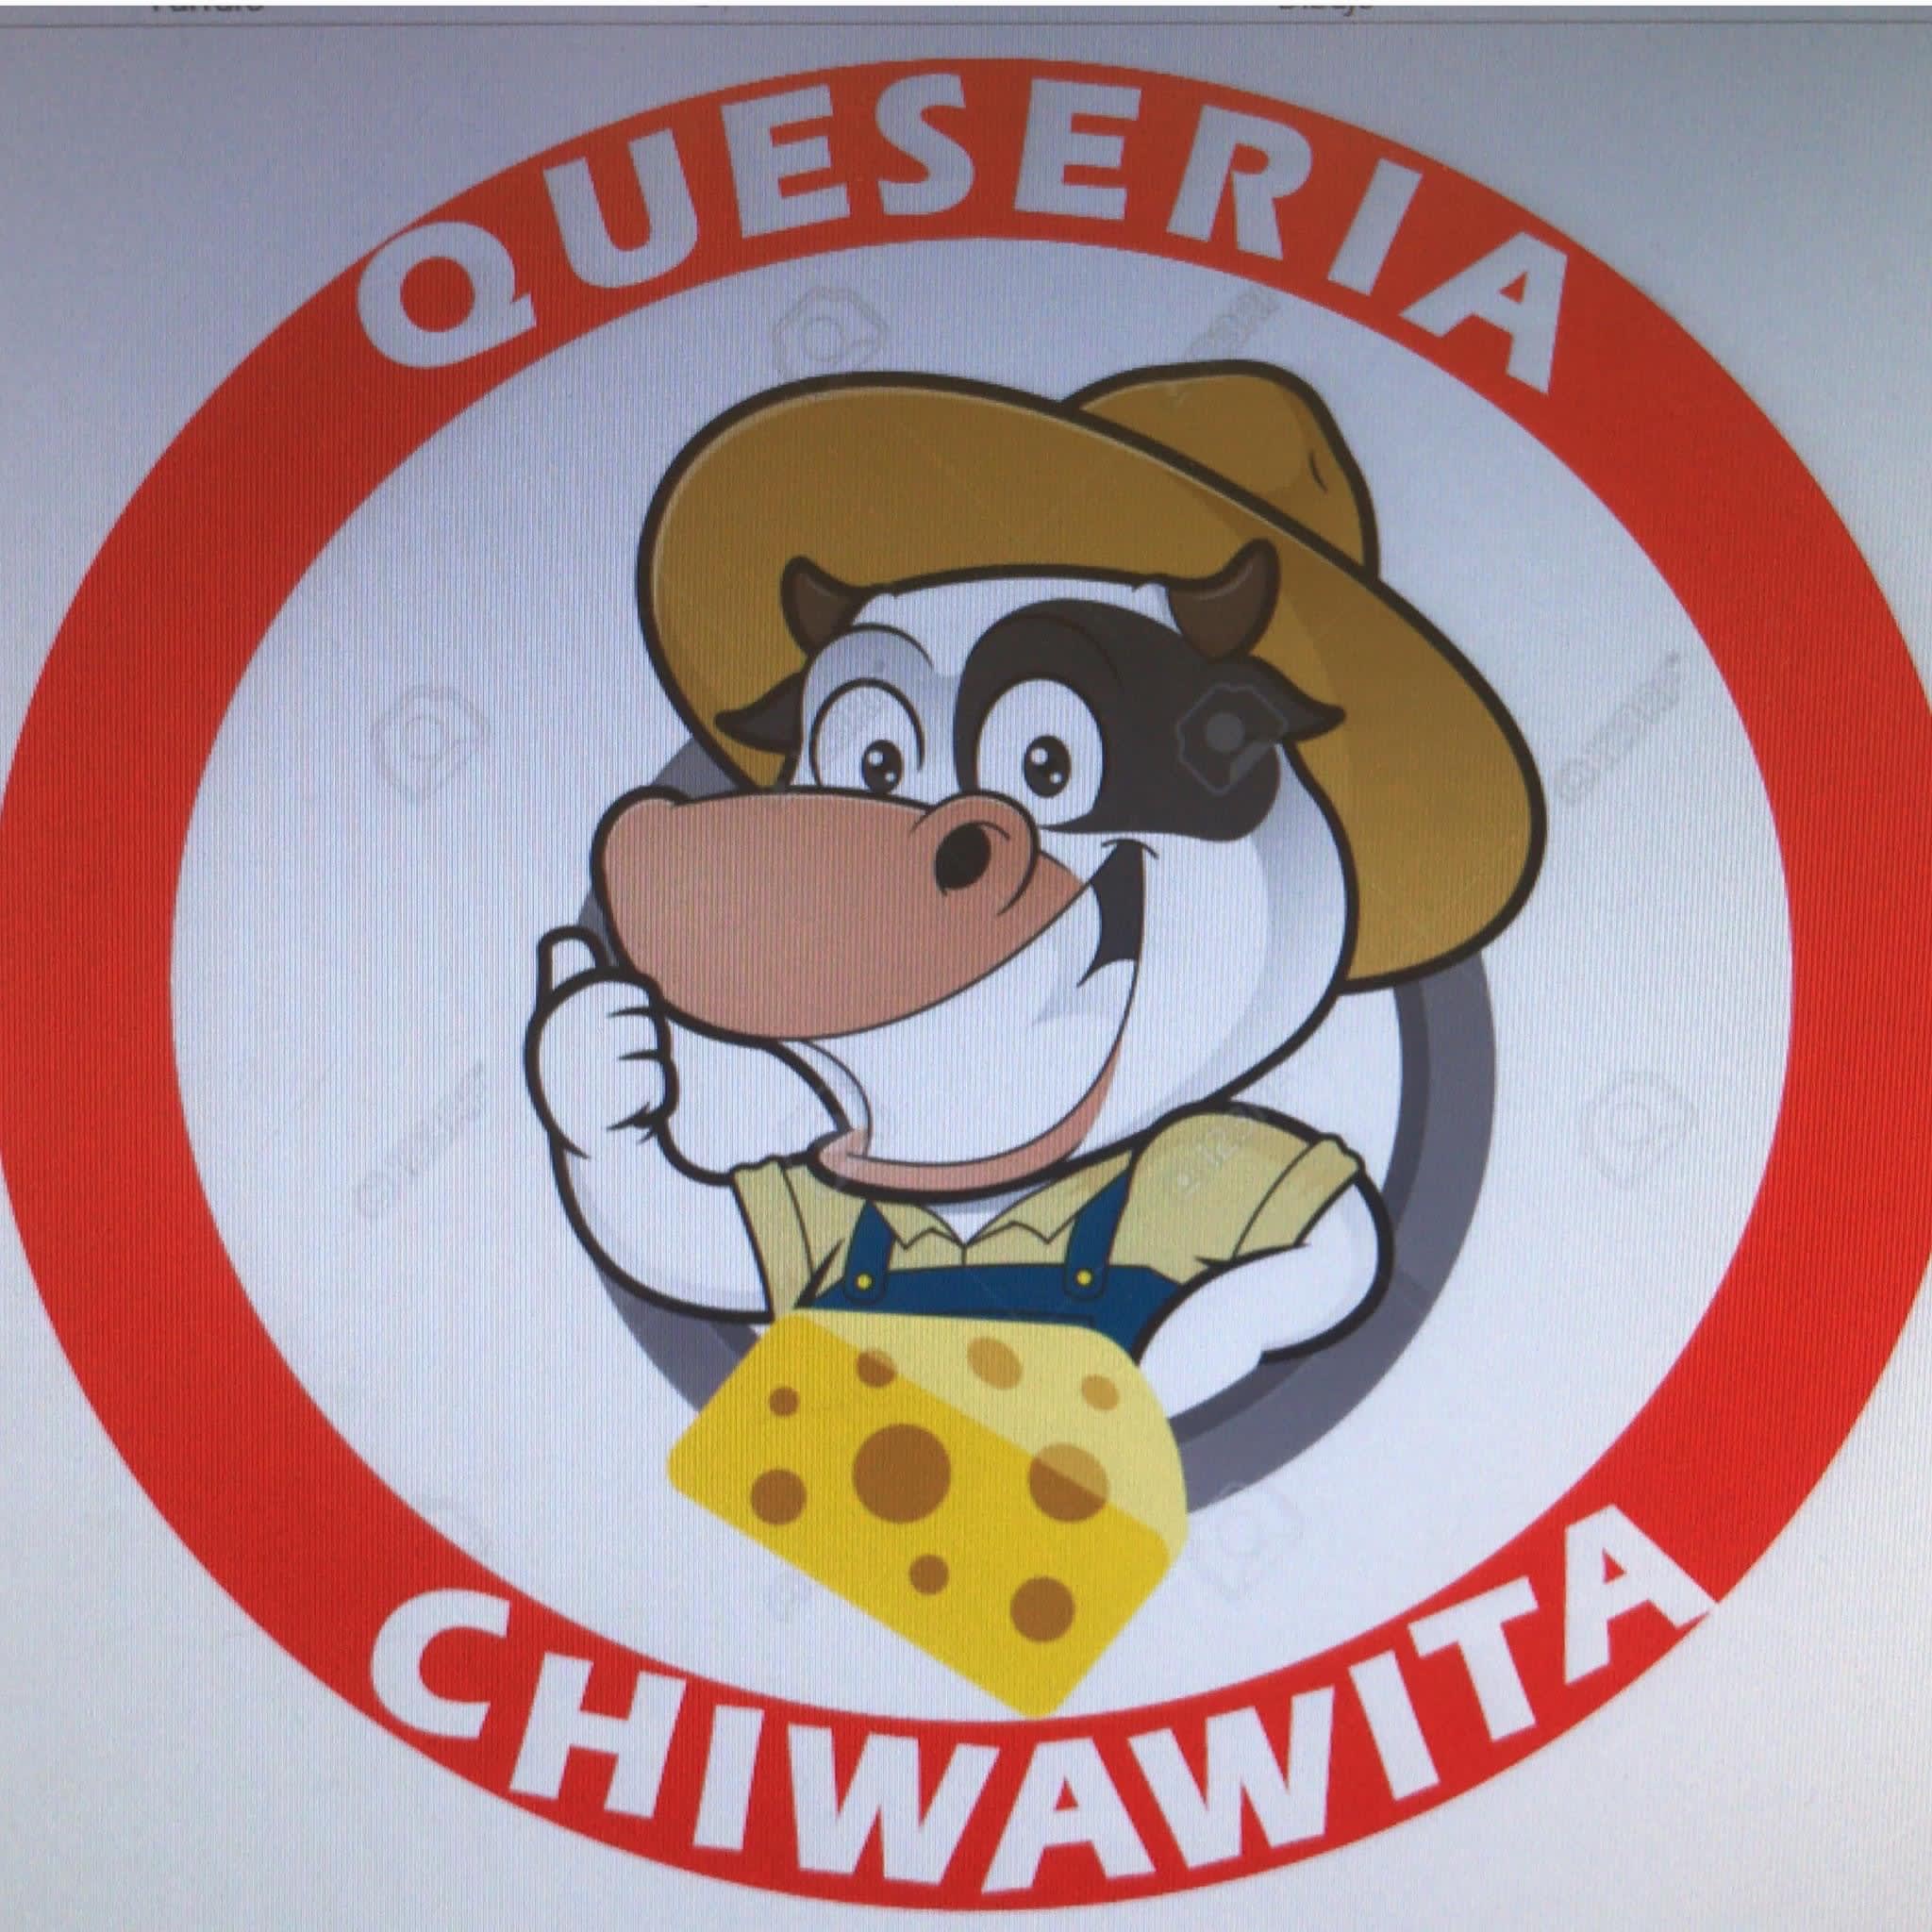 Quesería Chiwawita